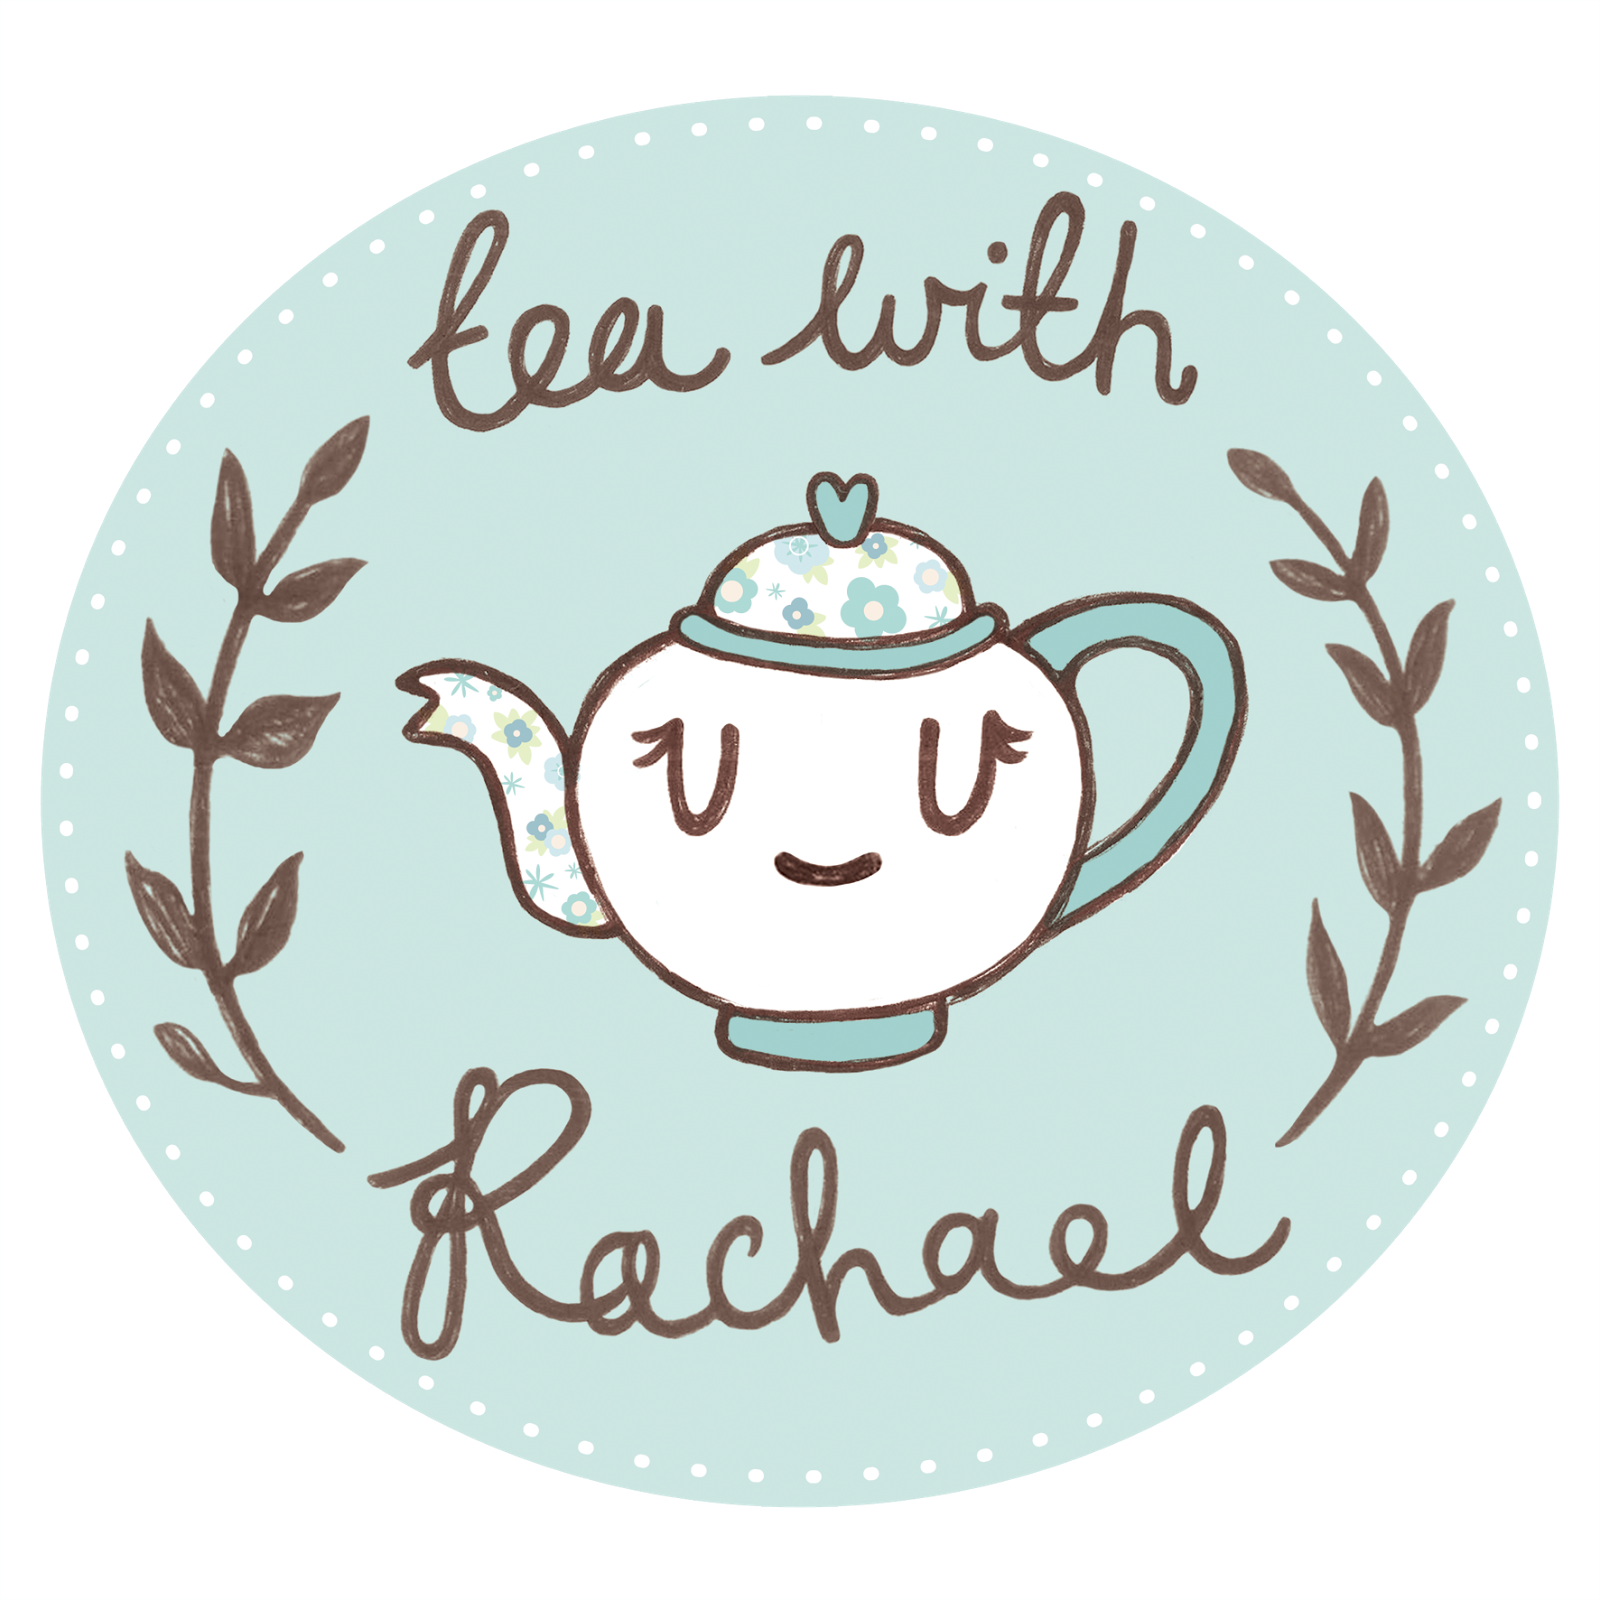 Tea with Rachael